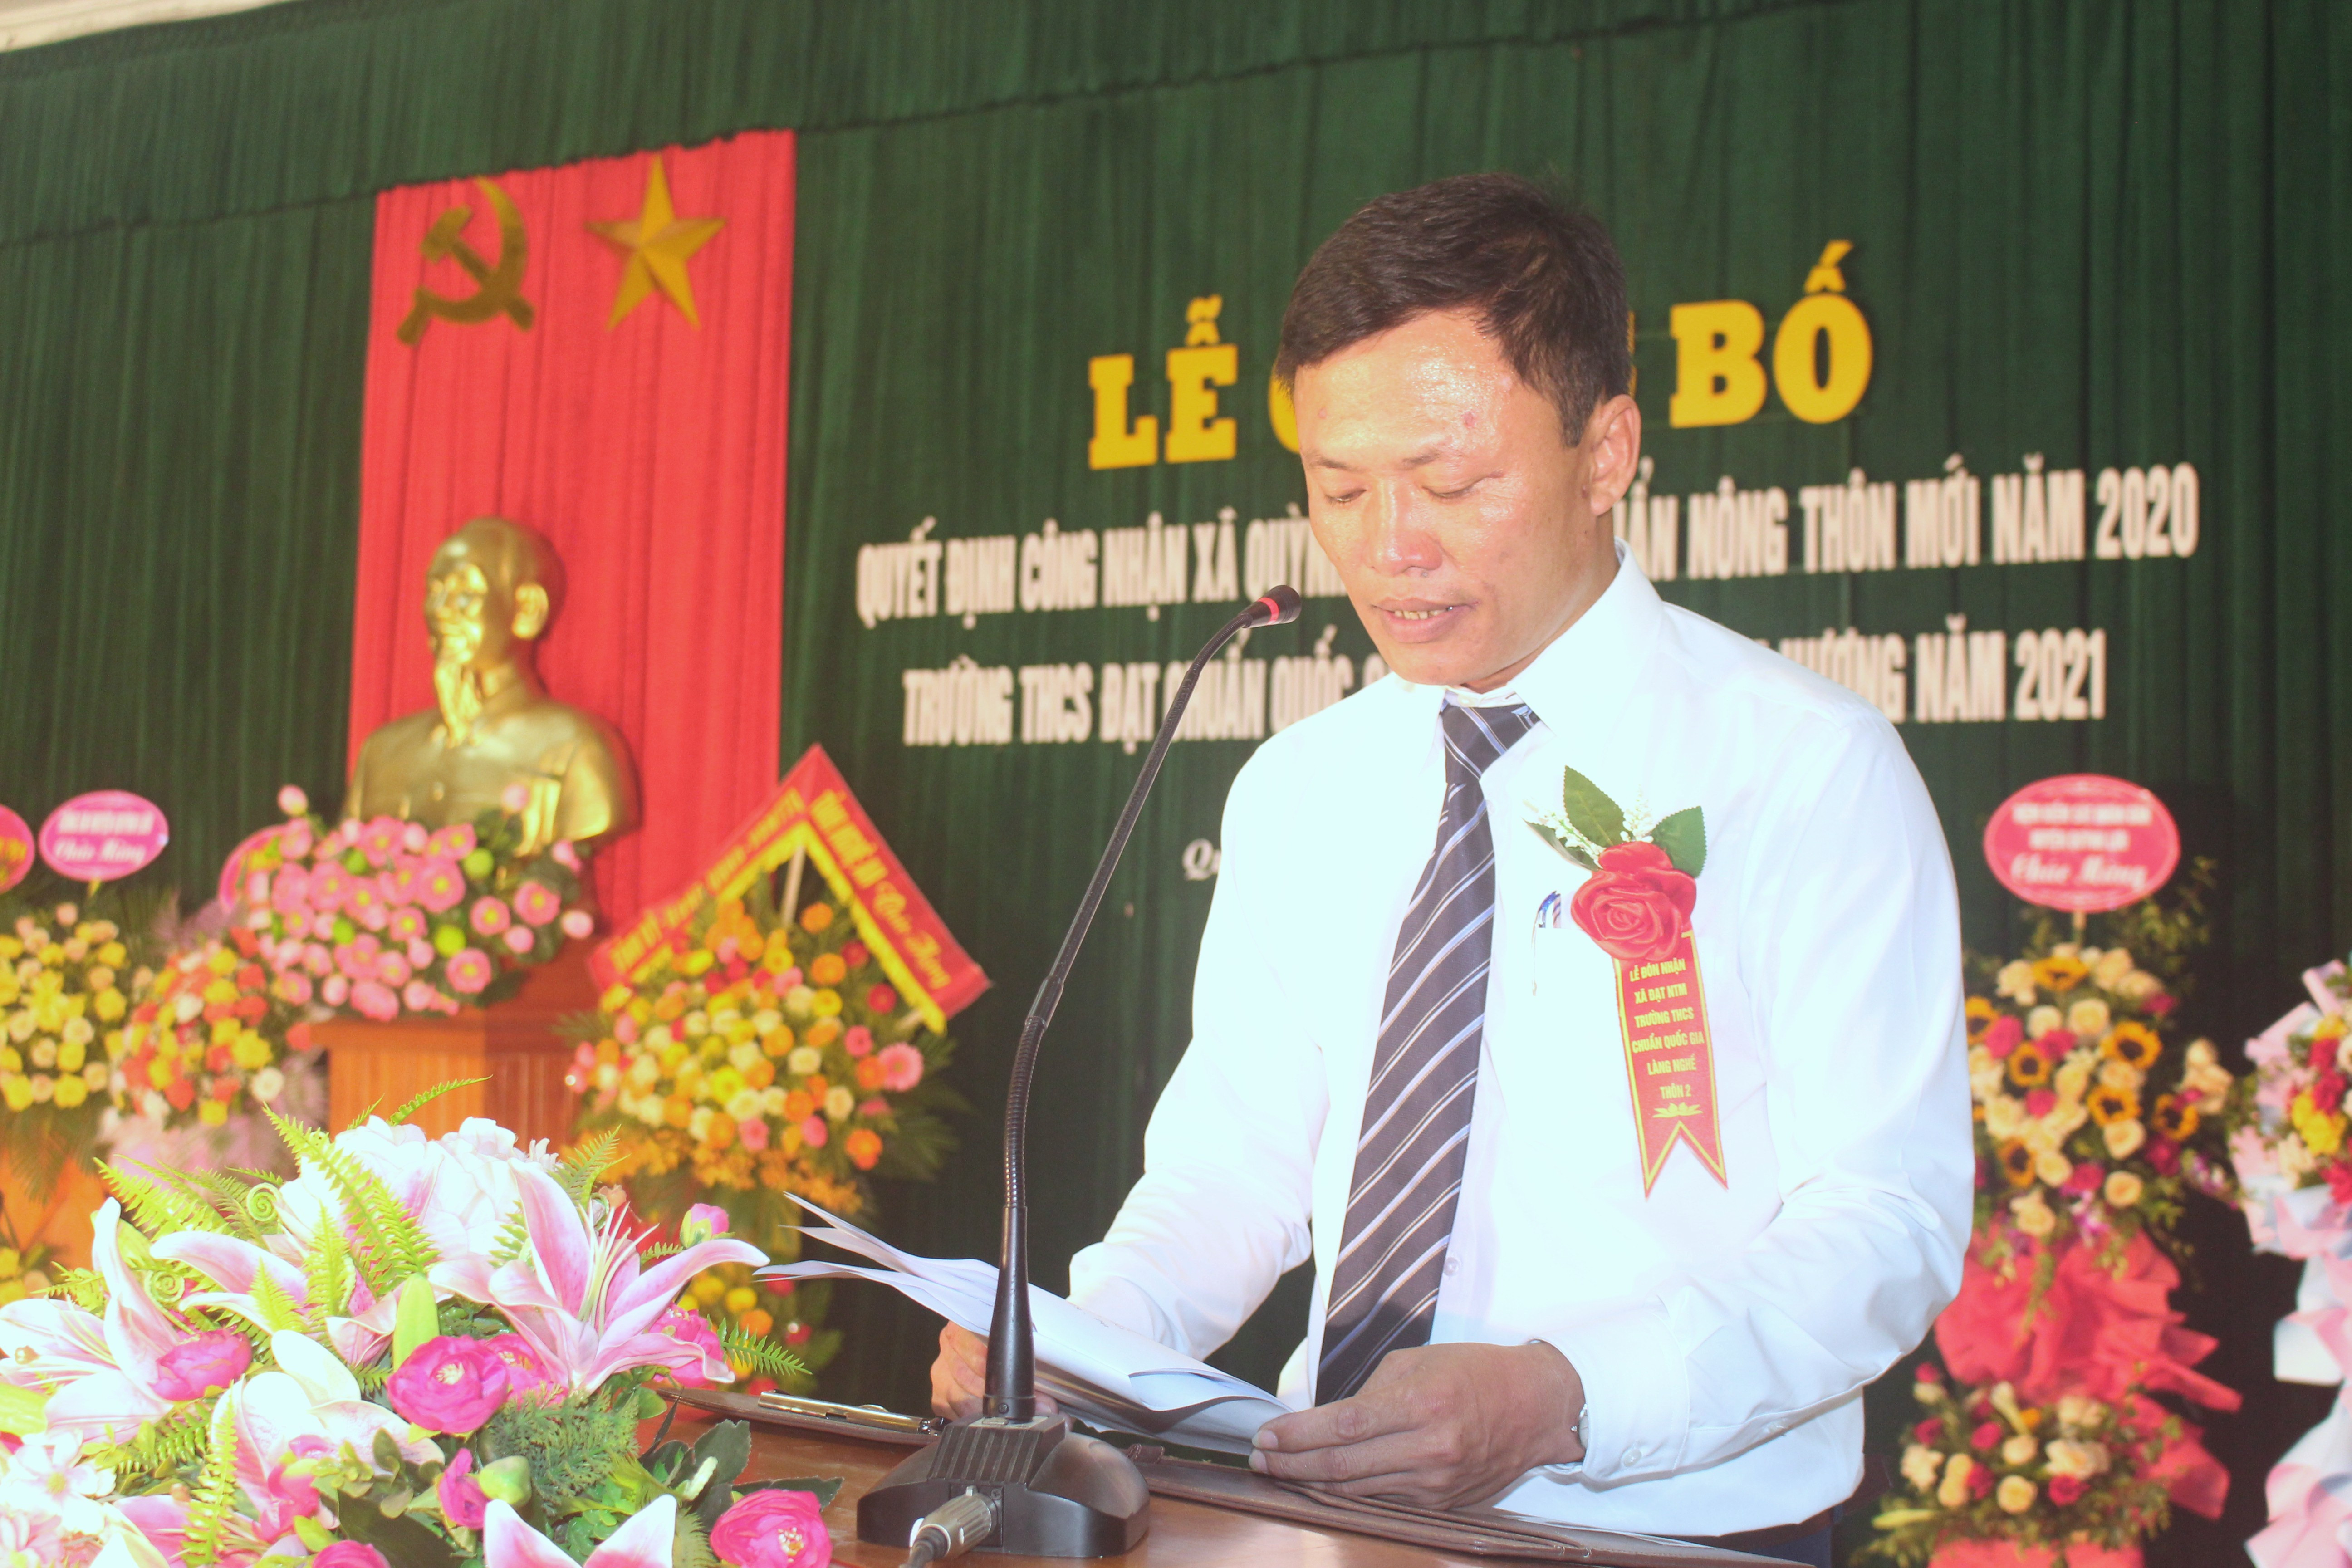 Đ/c Lê Văn Nga – Chủ tịch UBND xã Quỳnh Thắng báo cáo kết quả xây dựng Nông thôn mới. Ảnh: Việt Hùng